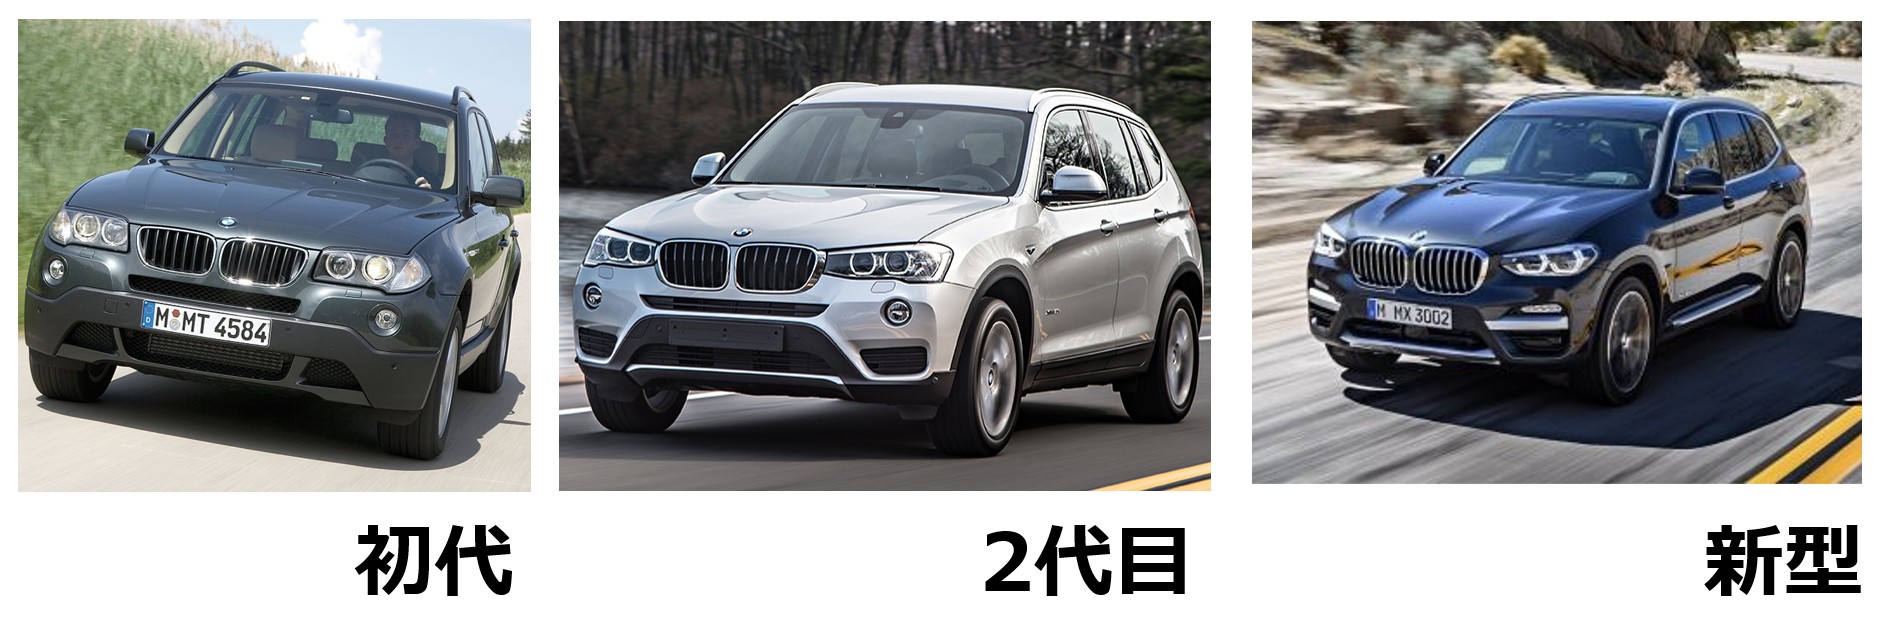 モデルチェンジした新型SUV、BMW X3の魅力を徹底解説。ガソリンとクリーンディーゼルの2本立てで、本体価格639万円から